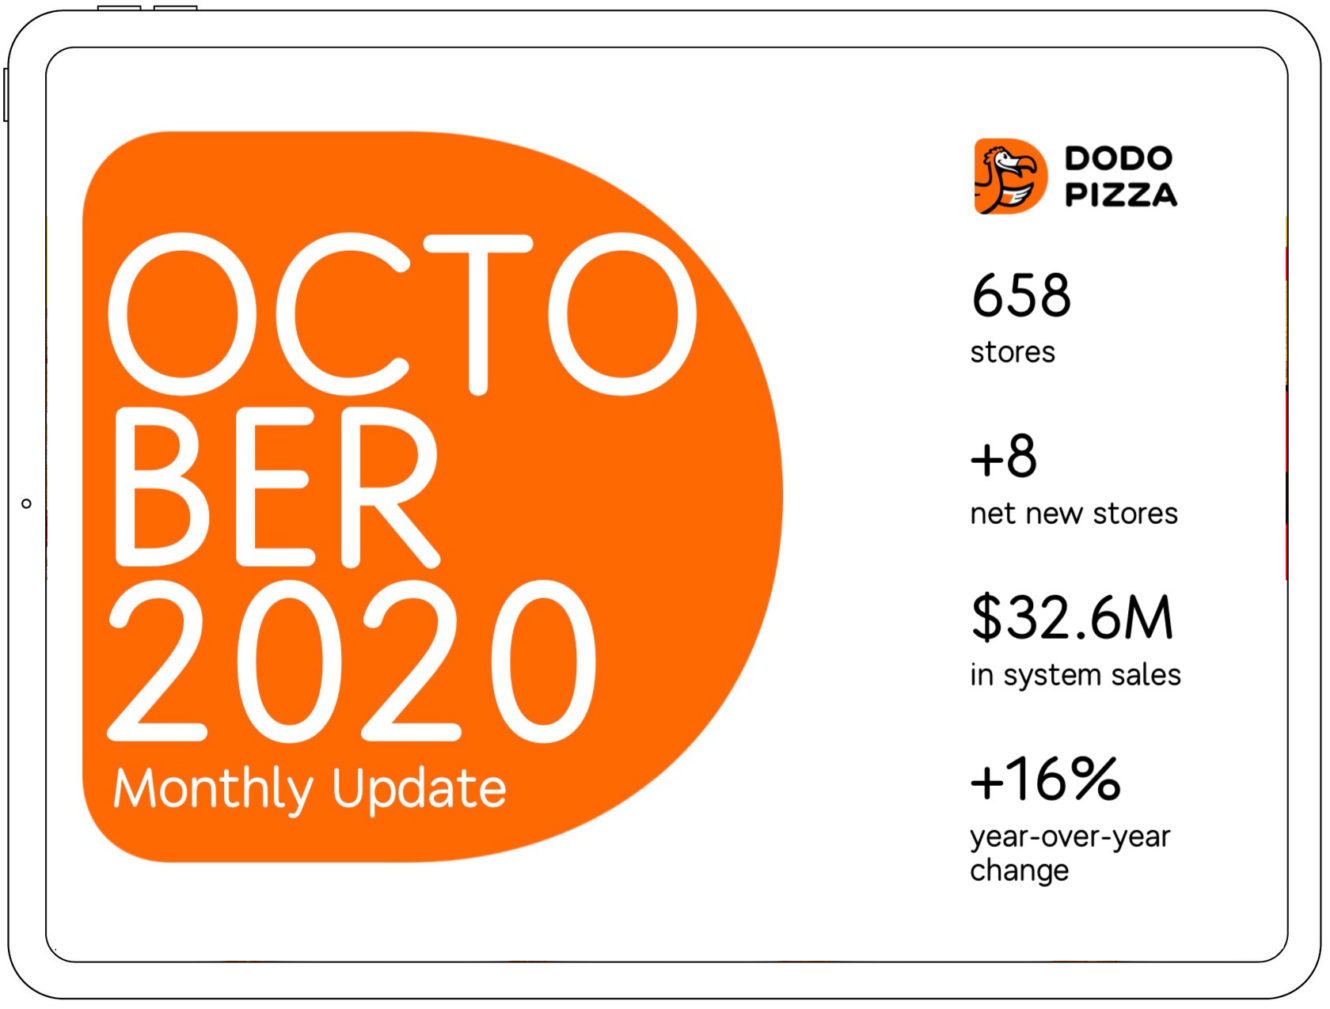 Dodo Pizza's monthly report